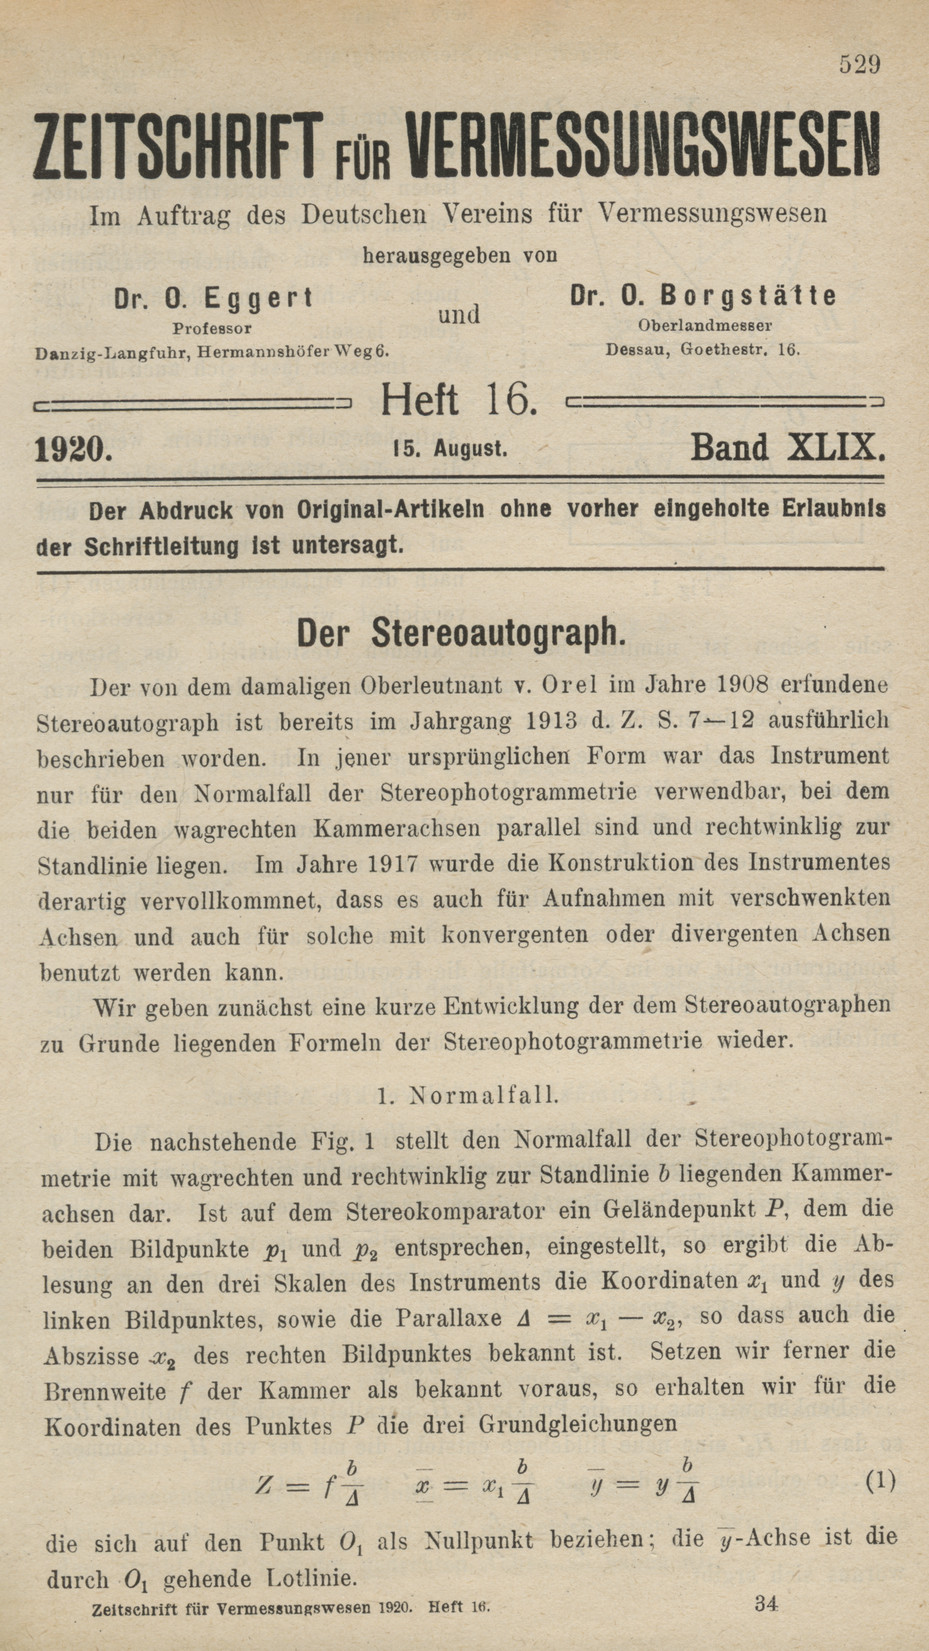 Zeitschrift für Vermessungswesen, Heft 16, Band XLIX